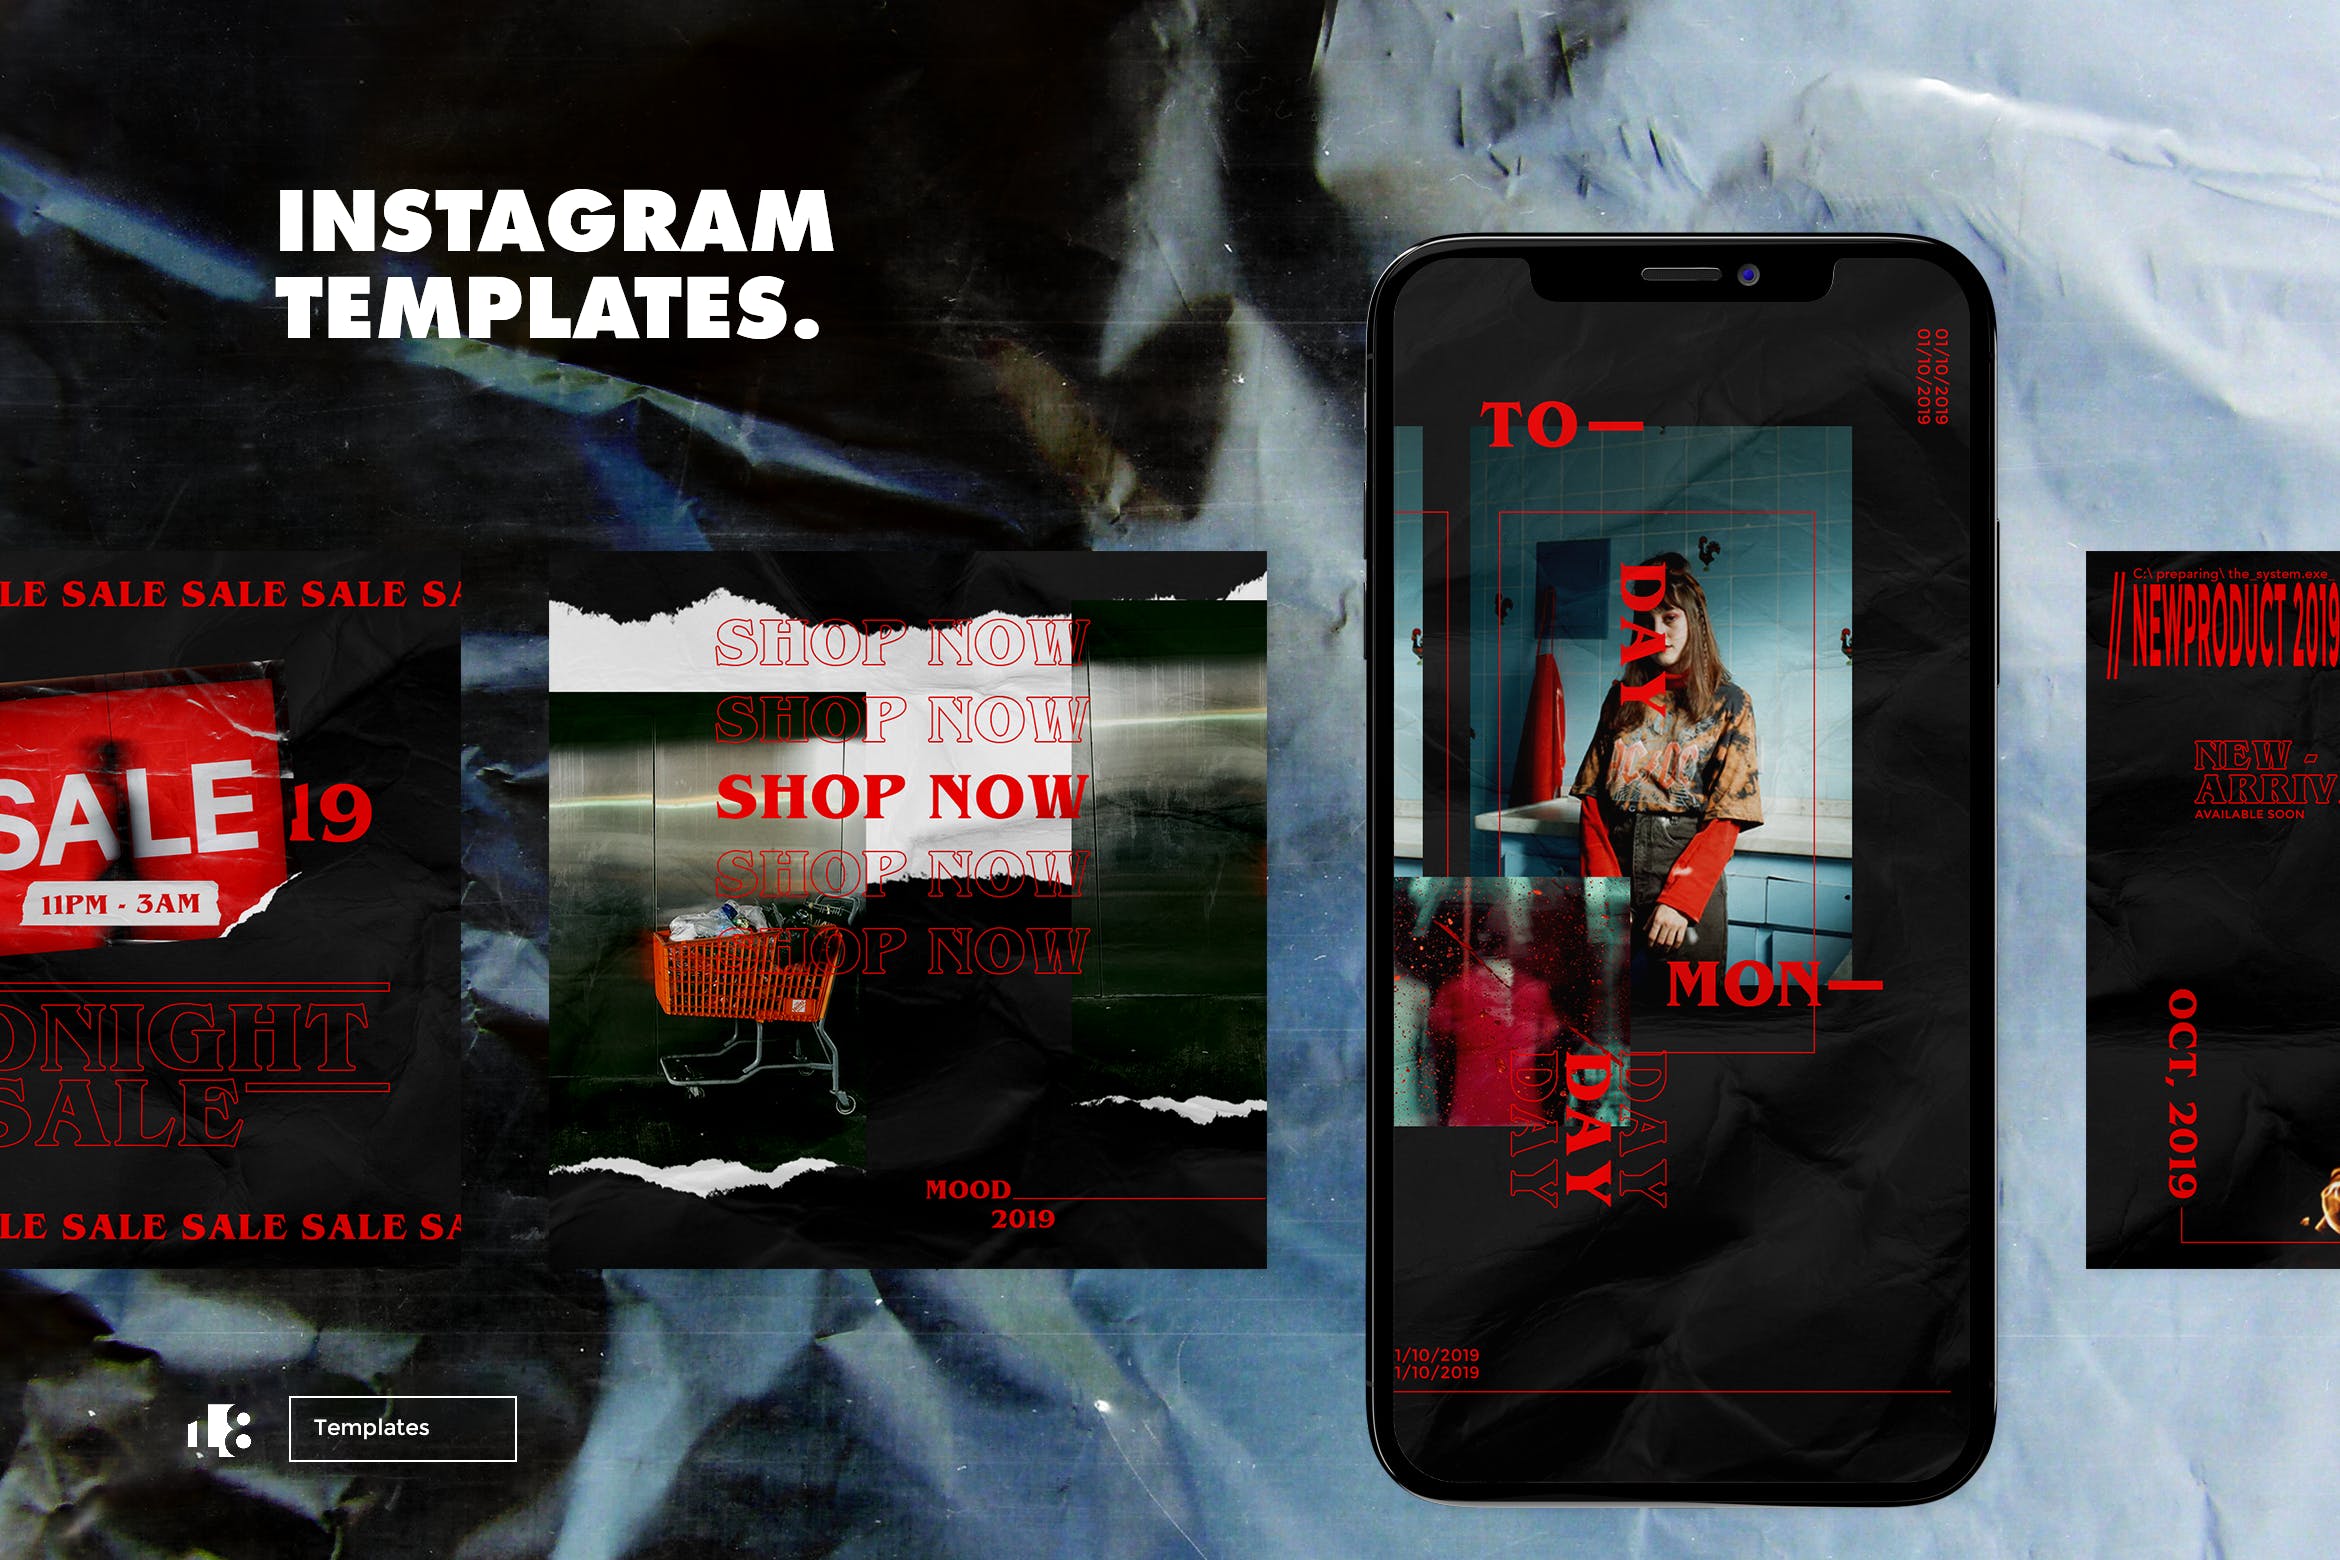 时装品牌商店大促销Instagram广告设计模板v4 Instagram Template vol.4设计素材模板